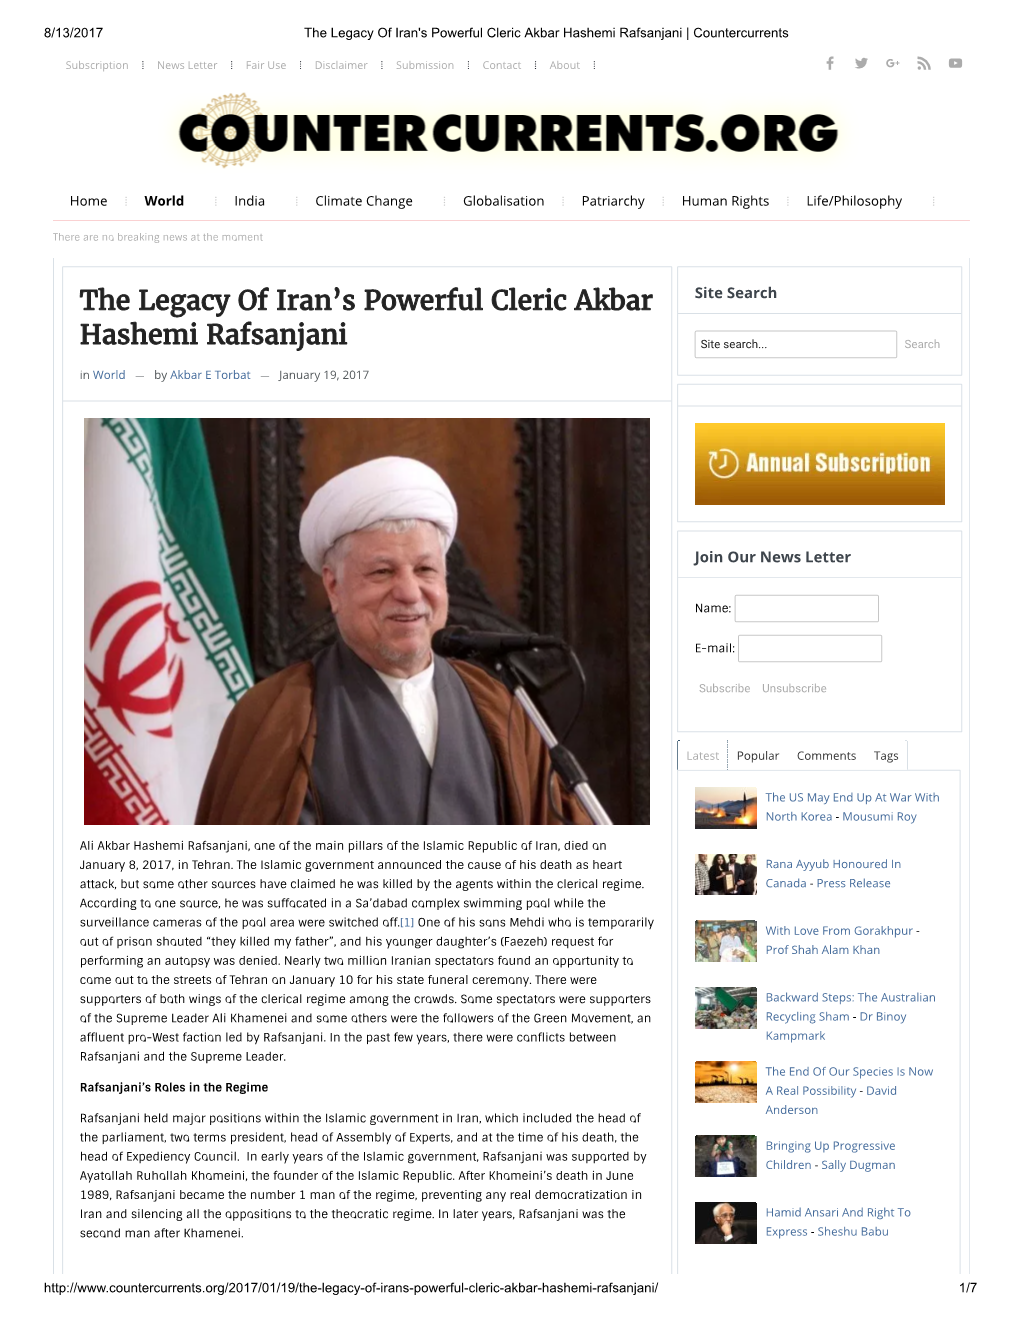 The Legacy of Iran's Powerful Cleric Akbar Hashemi Rafsanjani | Countercurrents